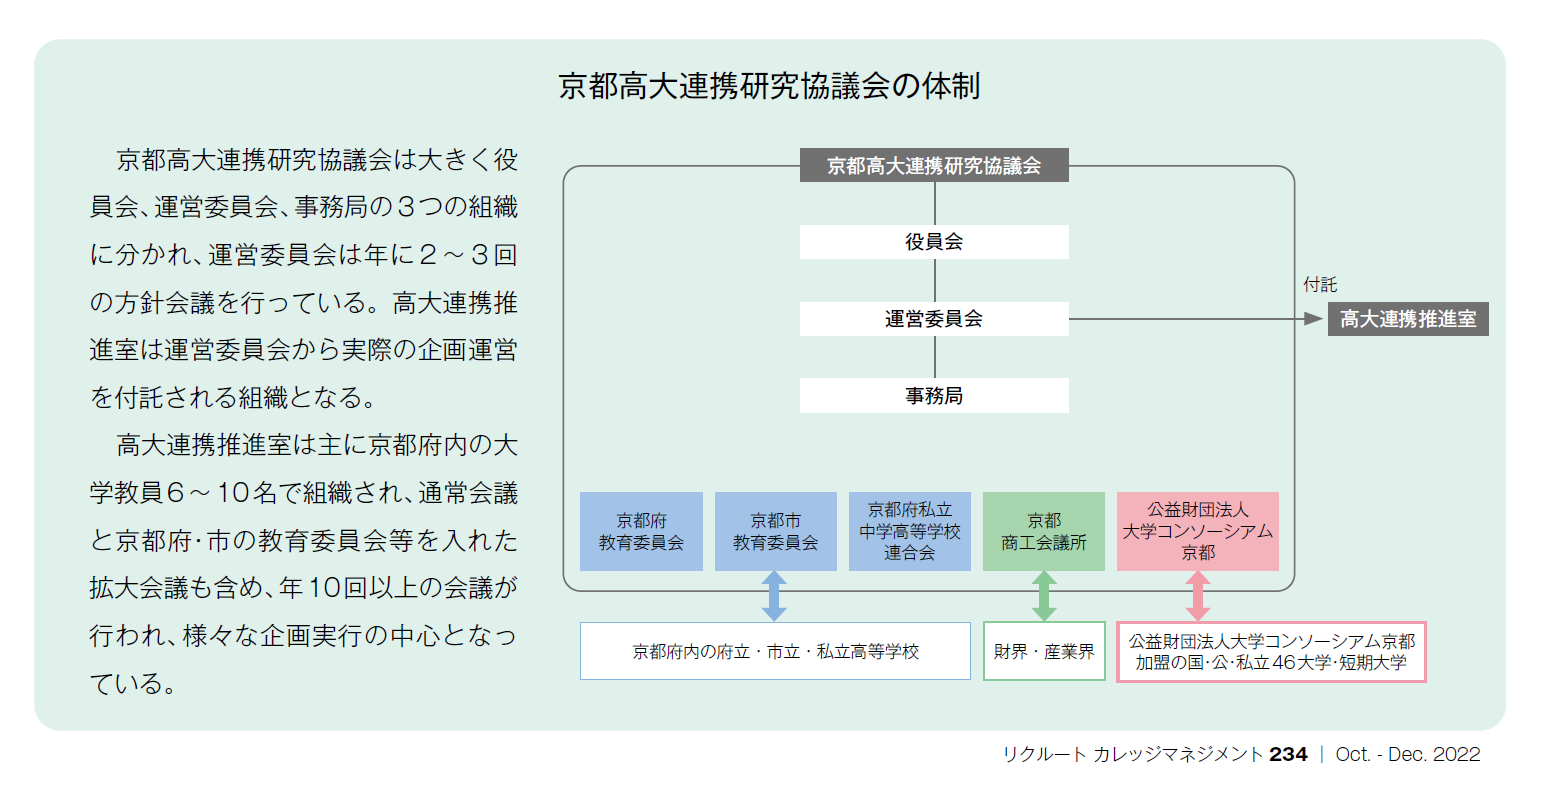 京都高大連携研究協議会の体制